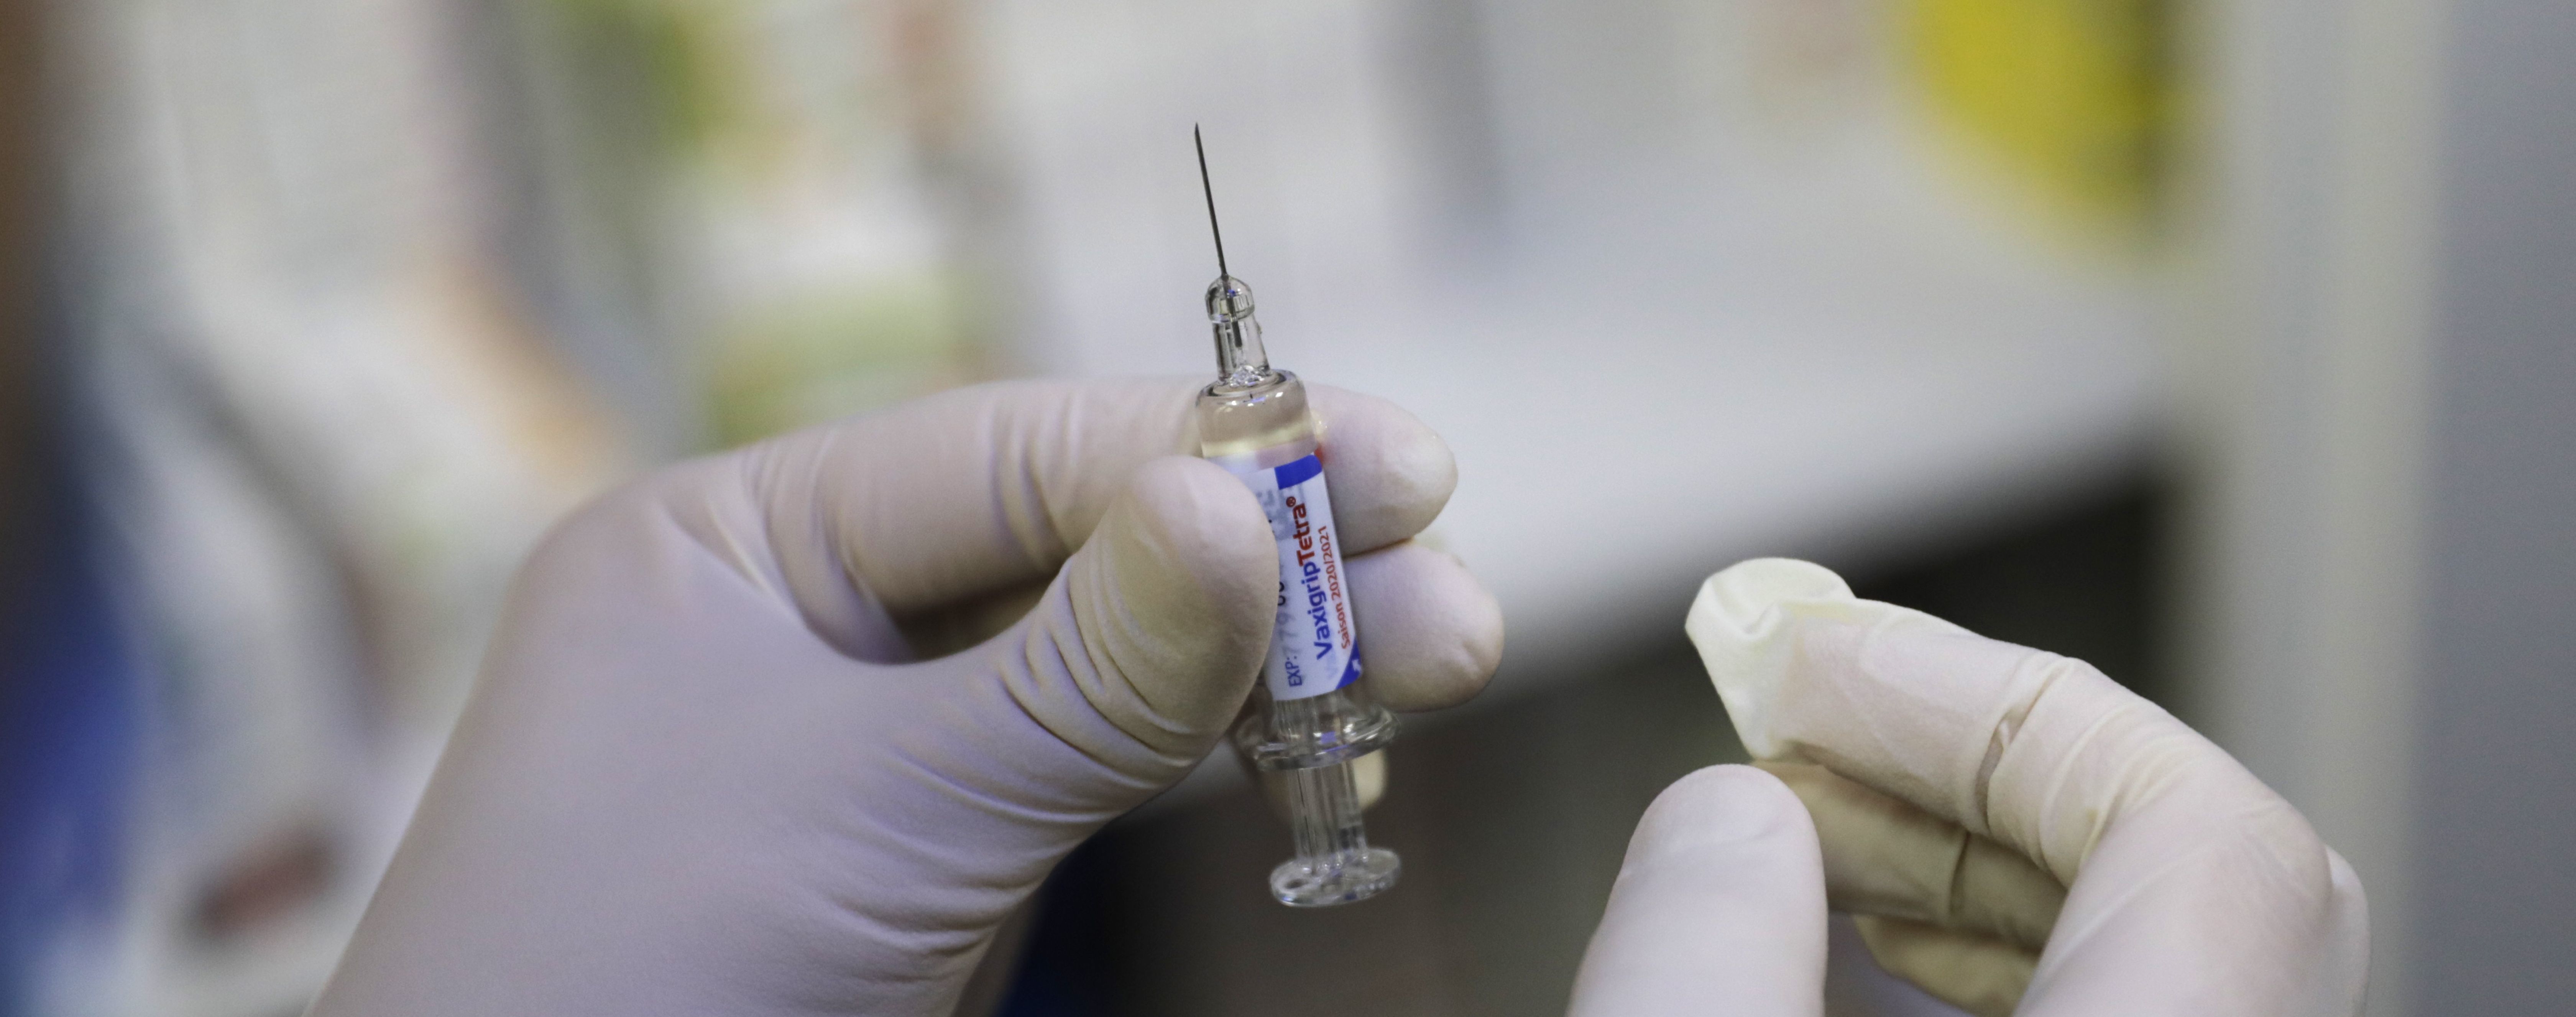 Уже в декабре Великобритания может начать применять вакцину против COVID-19